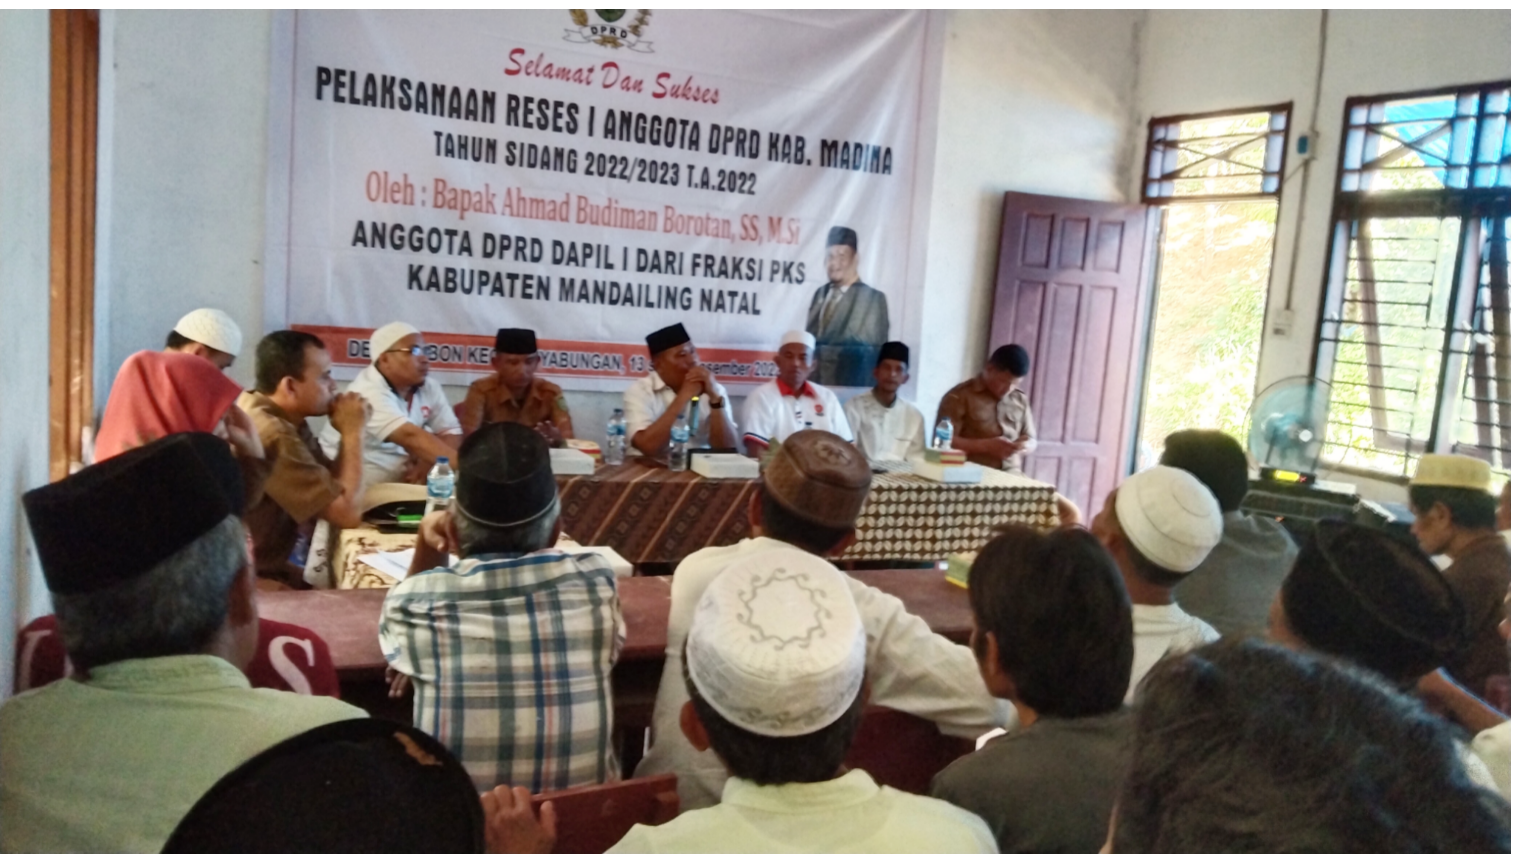 Ahmad Budiman Borotan Anggota DPRD Madina jemput aspirasi warga desa siobon jae. Fhoto : Syahren